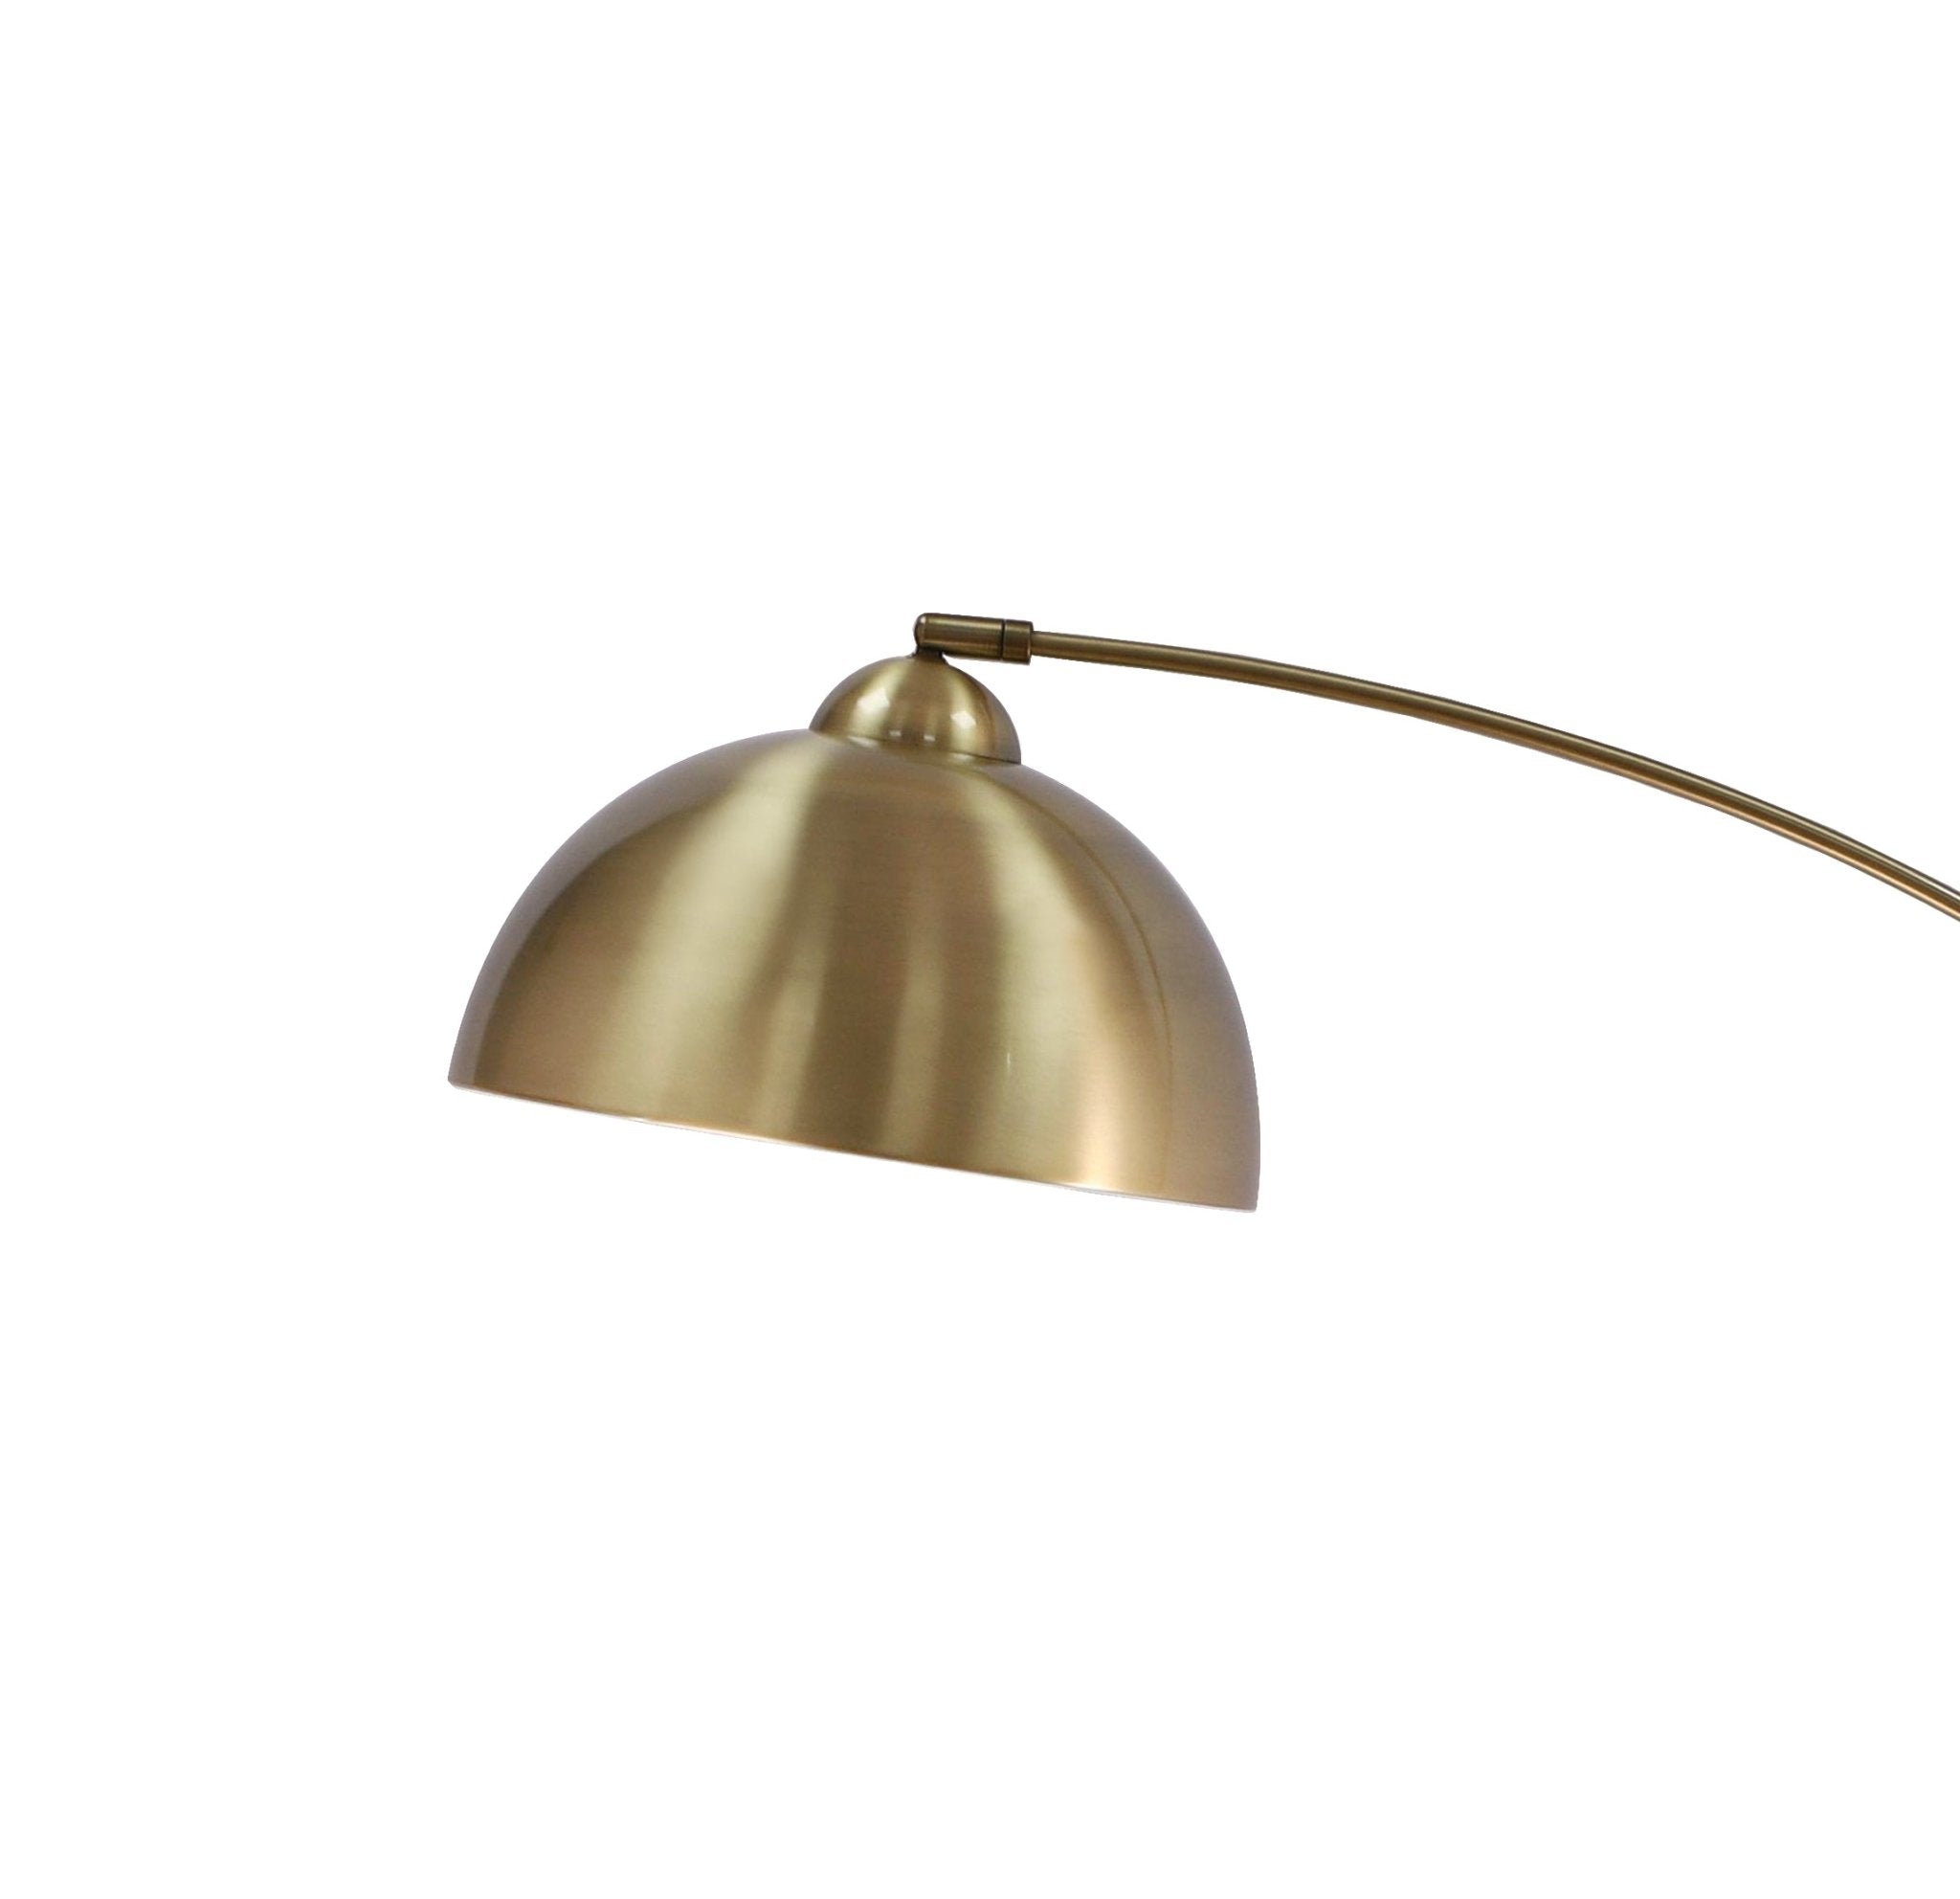 Venice Brass Arc Floor Lamp - Archiology